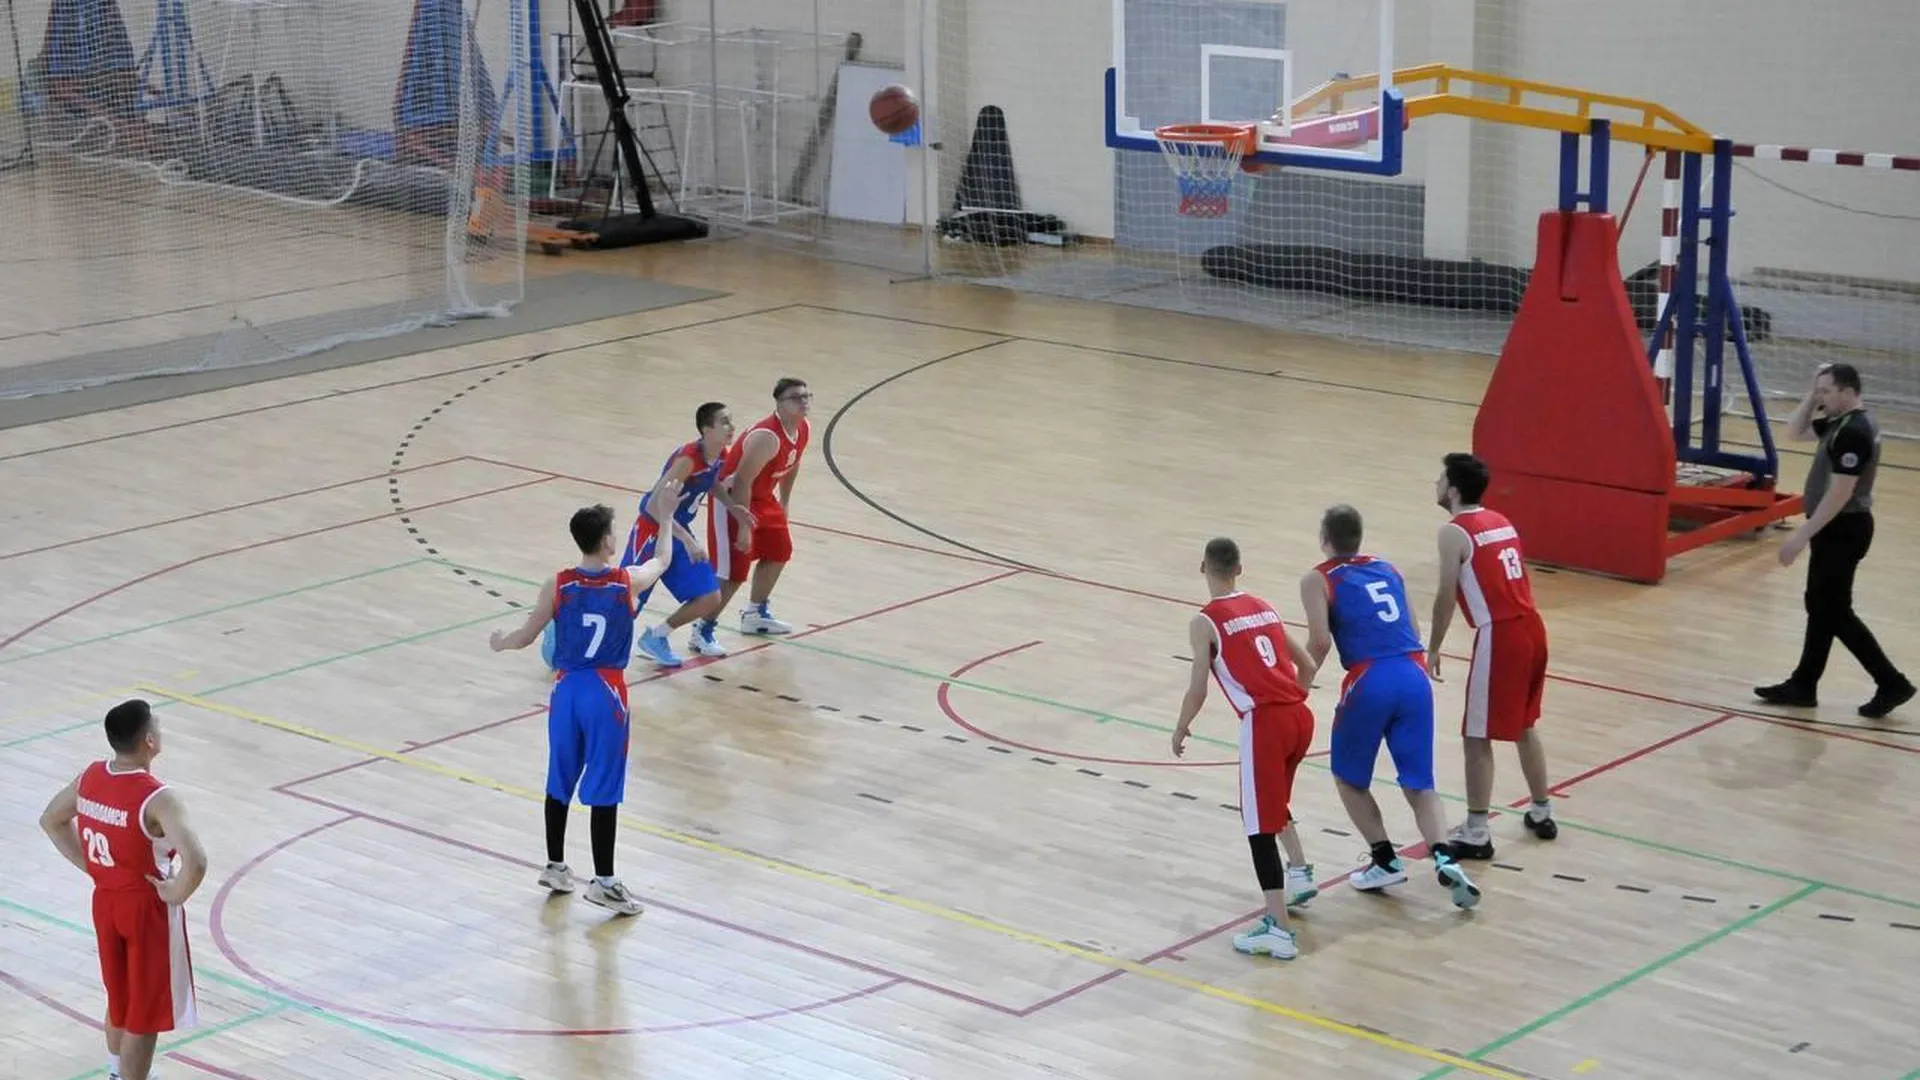 Финал регионального этапа чемпионата школьной баскетбольной лиги пройдет в Мытищах 26 февраля